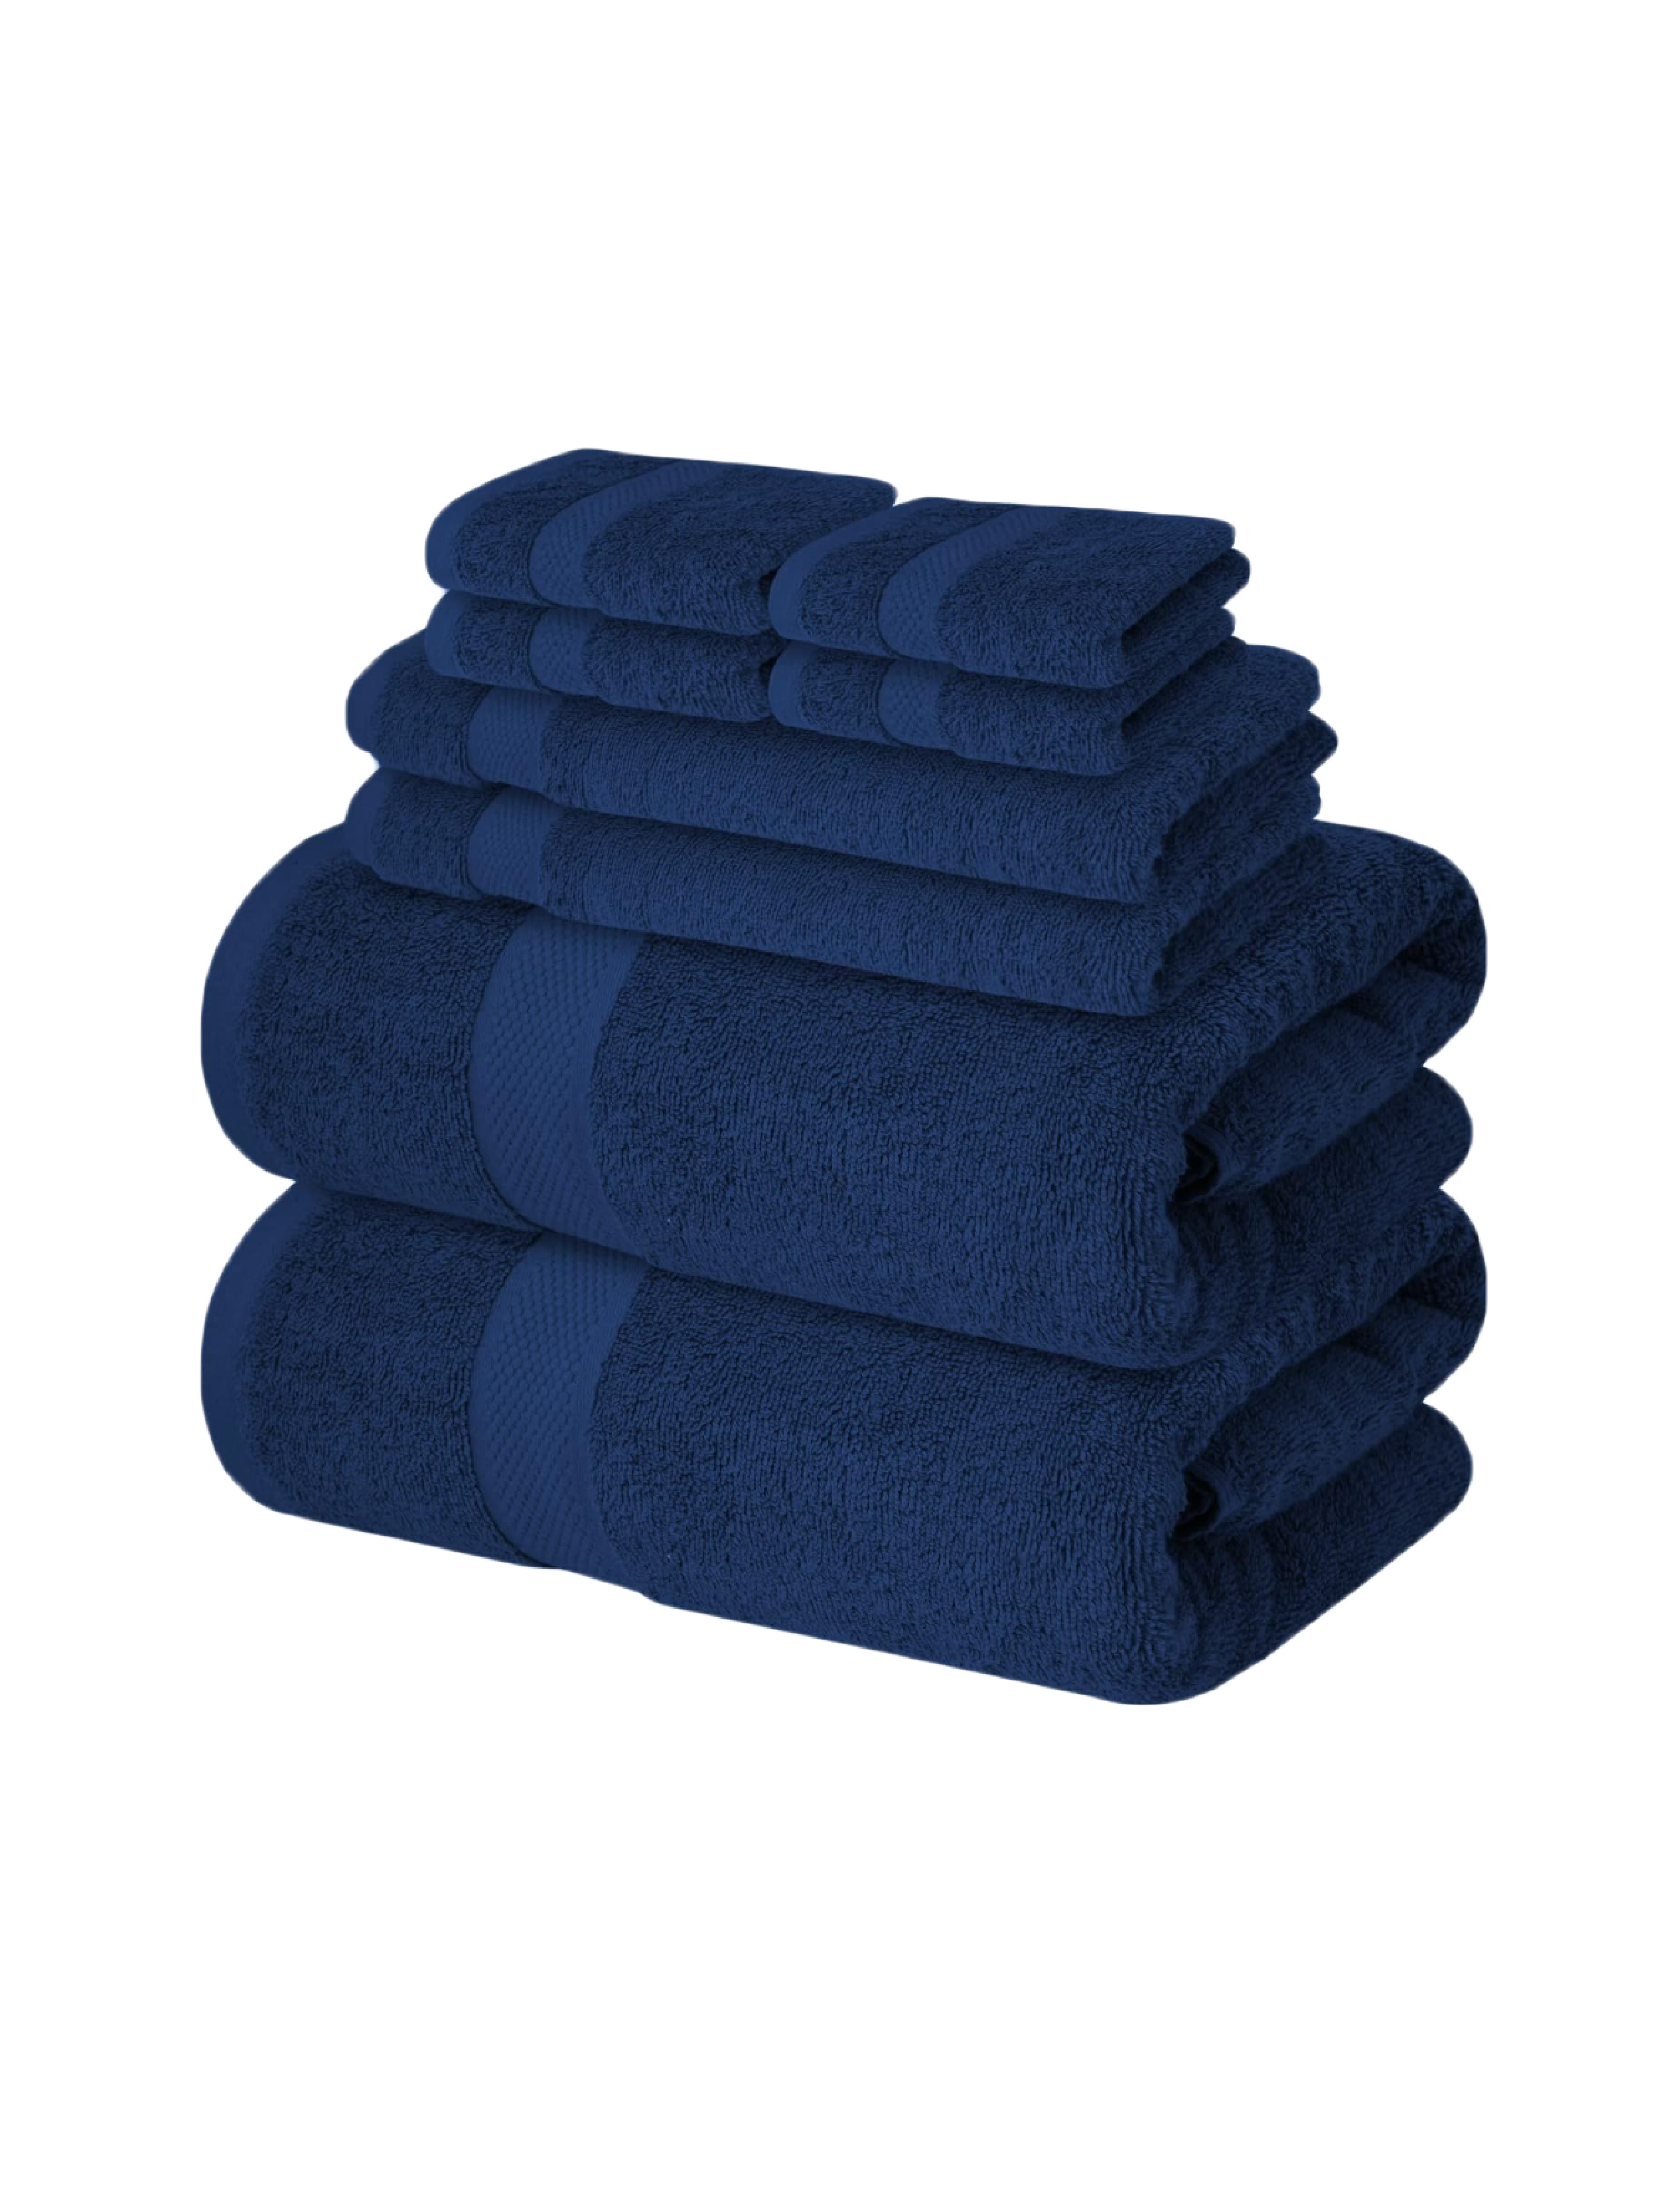 towels-01.png